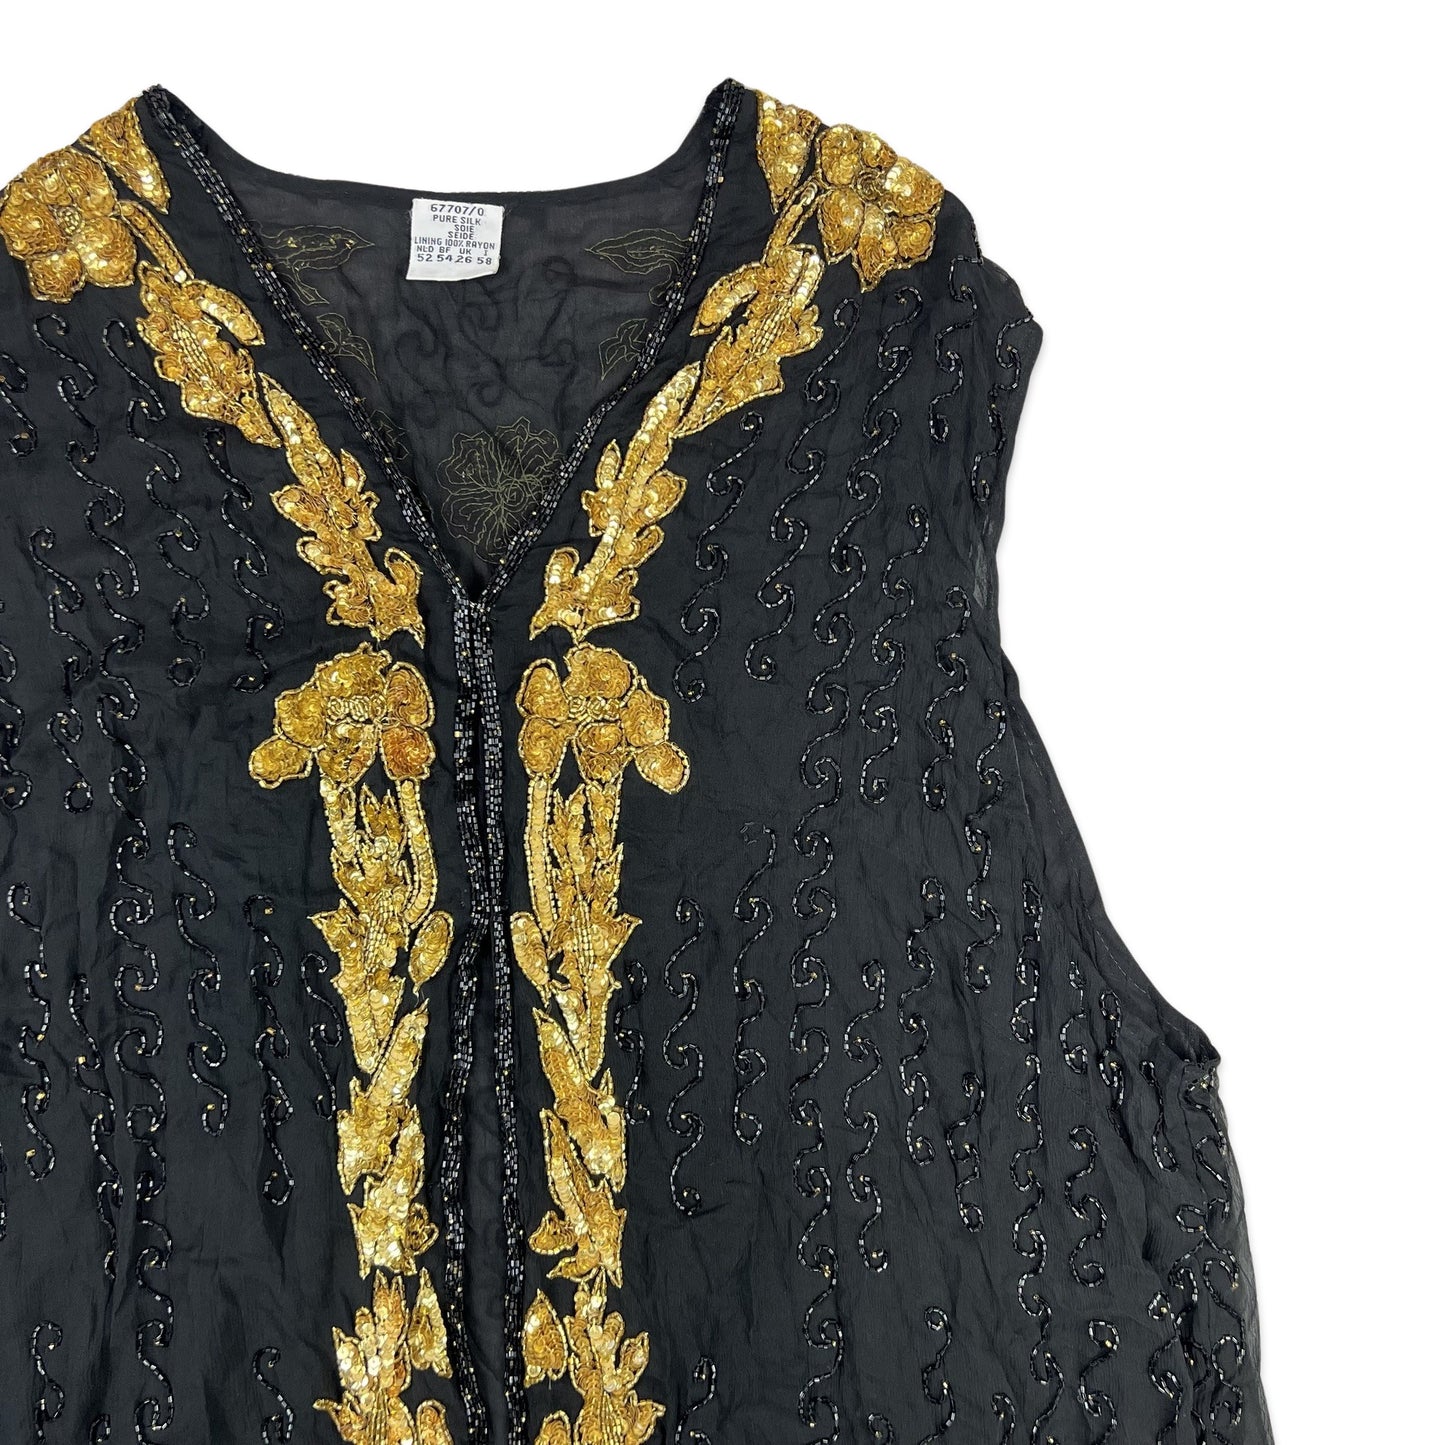 Vintage Sequin Blouse Waistcoat Black Gold 16